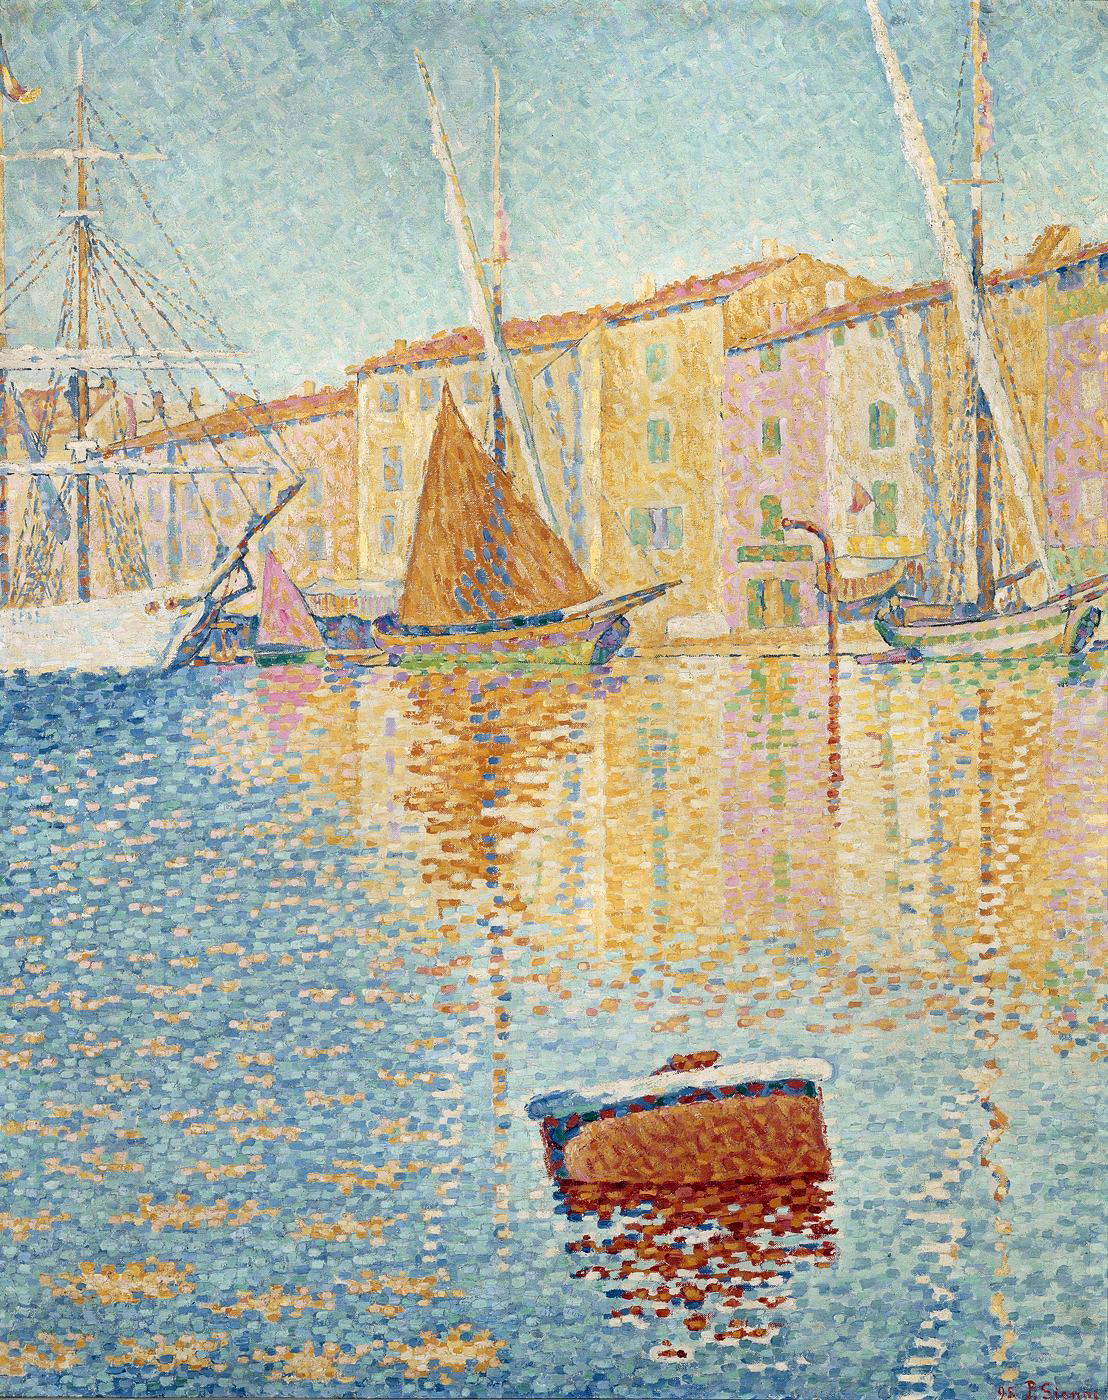 De rode boei, Saint-Tropez by Paul Signac - 1895 - 81 x 65 cm 